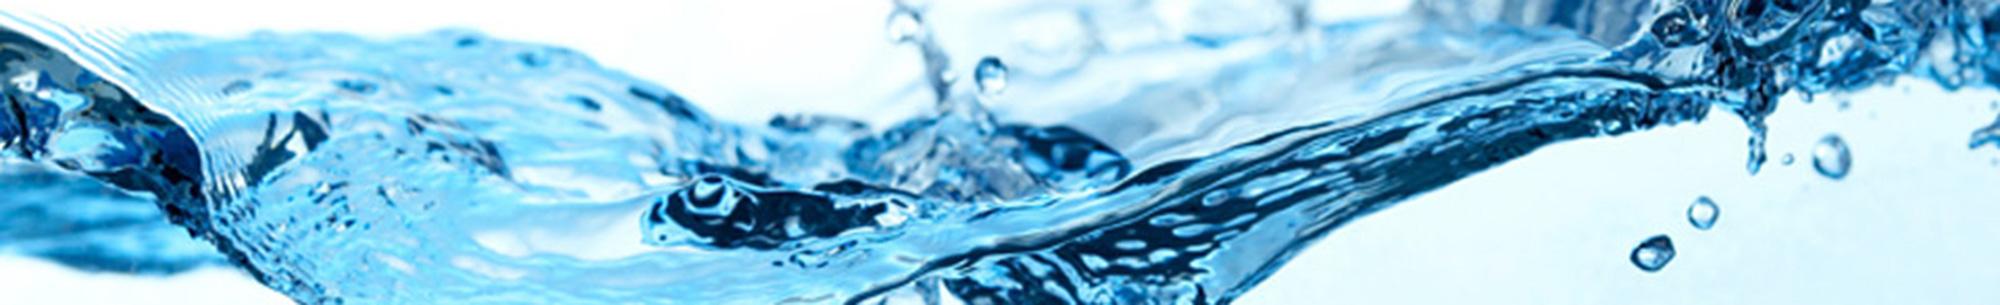 Climatek, l'acqua buona dal rubinetto di casa tua